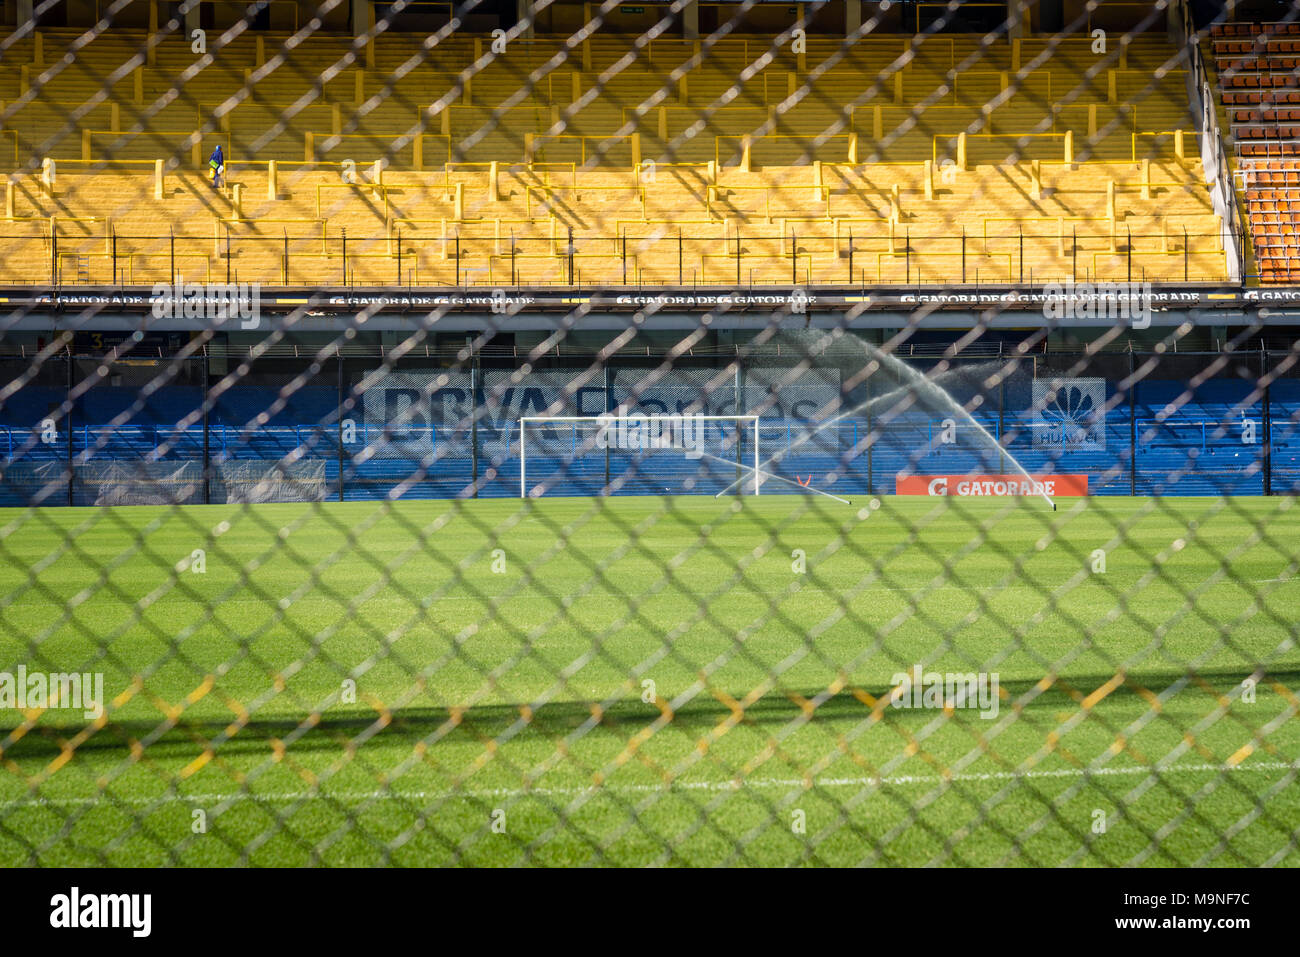 La Bombonera, home terra al Boca Juniors football club, Buenos Aires, Argentina Foto Stock